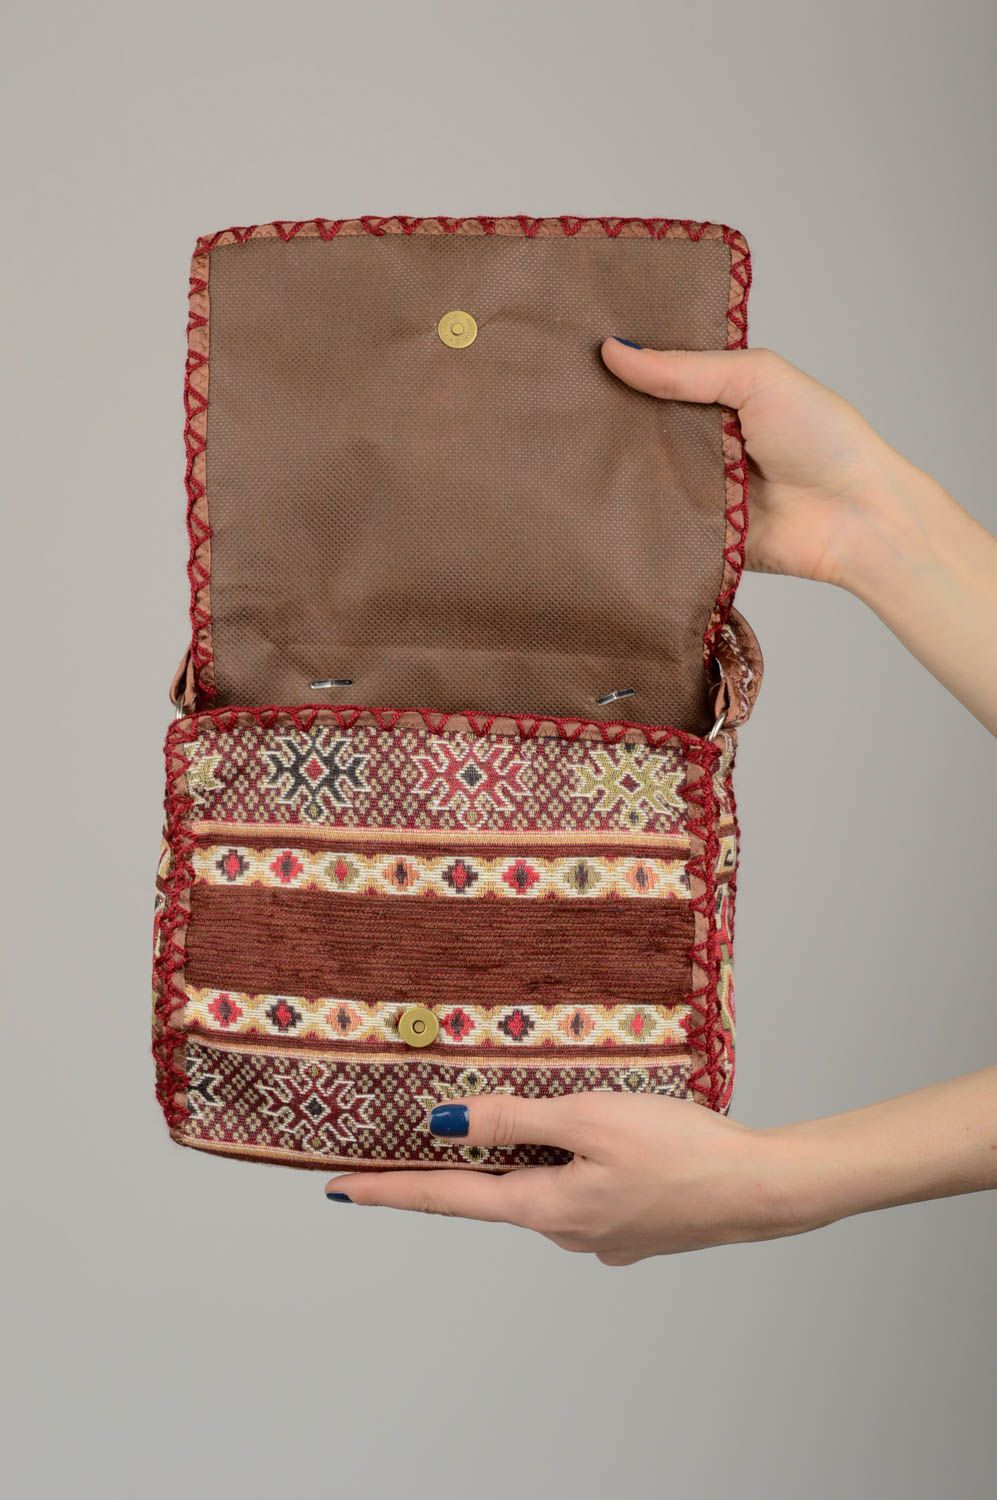 Sac bandoulière en tissu Sac fait main avec motifs ethniques Accessoire femme photo 4